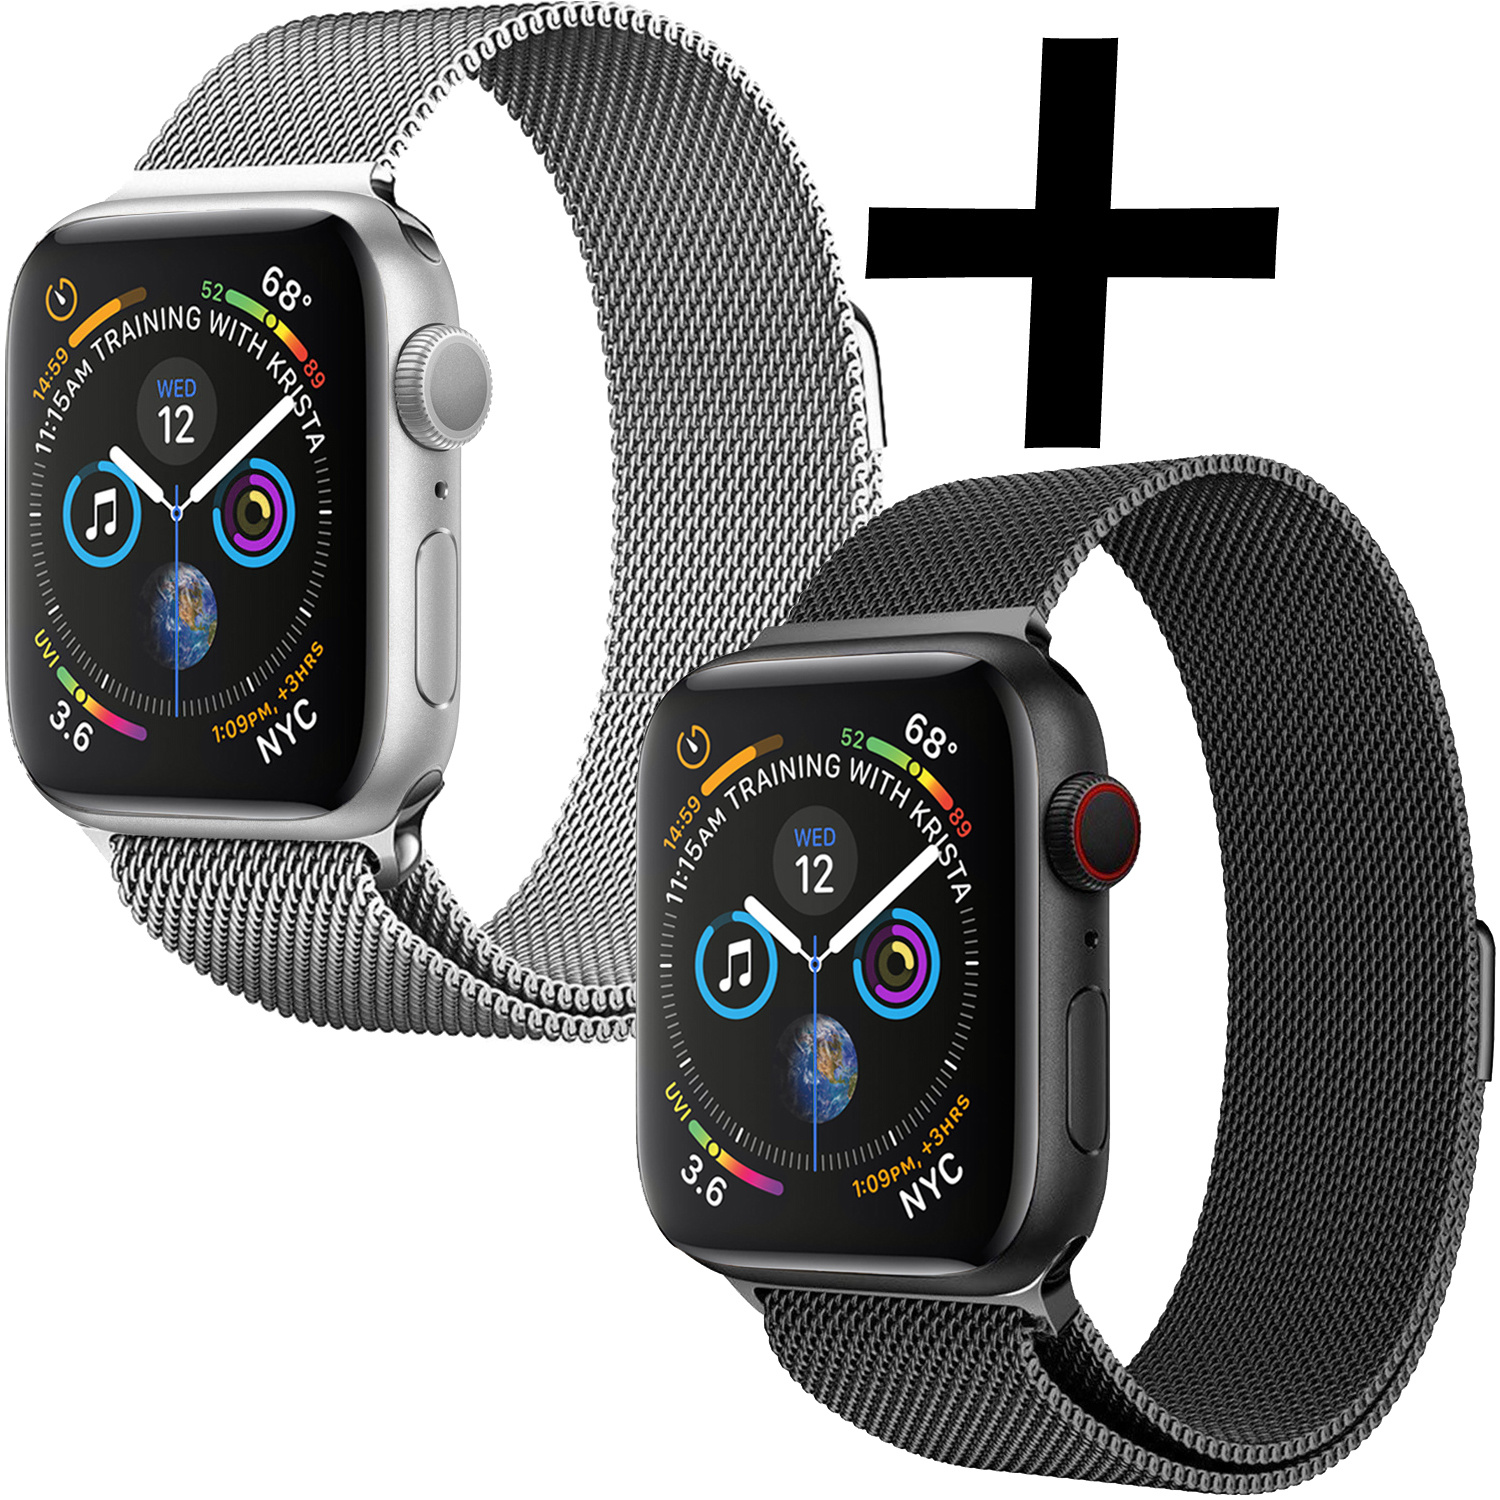 Nomfy Geschikt Voor Apple Watch 7 Bandje Zilver Milanees Horloge Band Voor Apple Watch 7 Band (41) mm - Zwart x Zilver